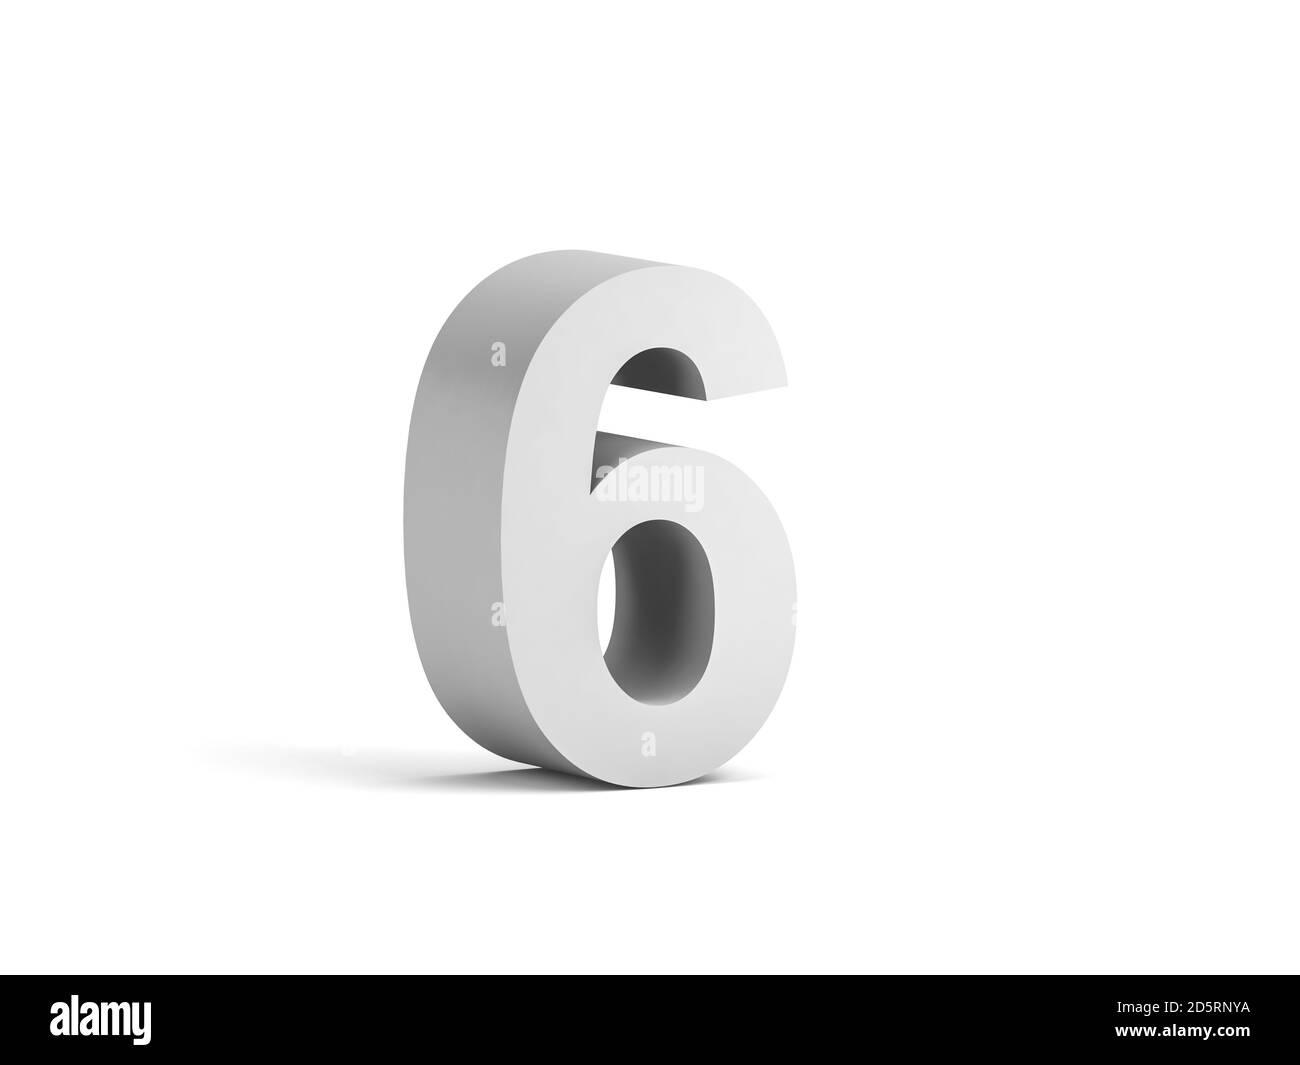 Cifra bianca in grassetto 6 isolata su sfondo bianco con ombreggiatura morbida, rappresentazione 3d Foto Stock